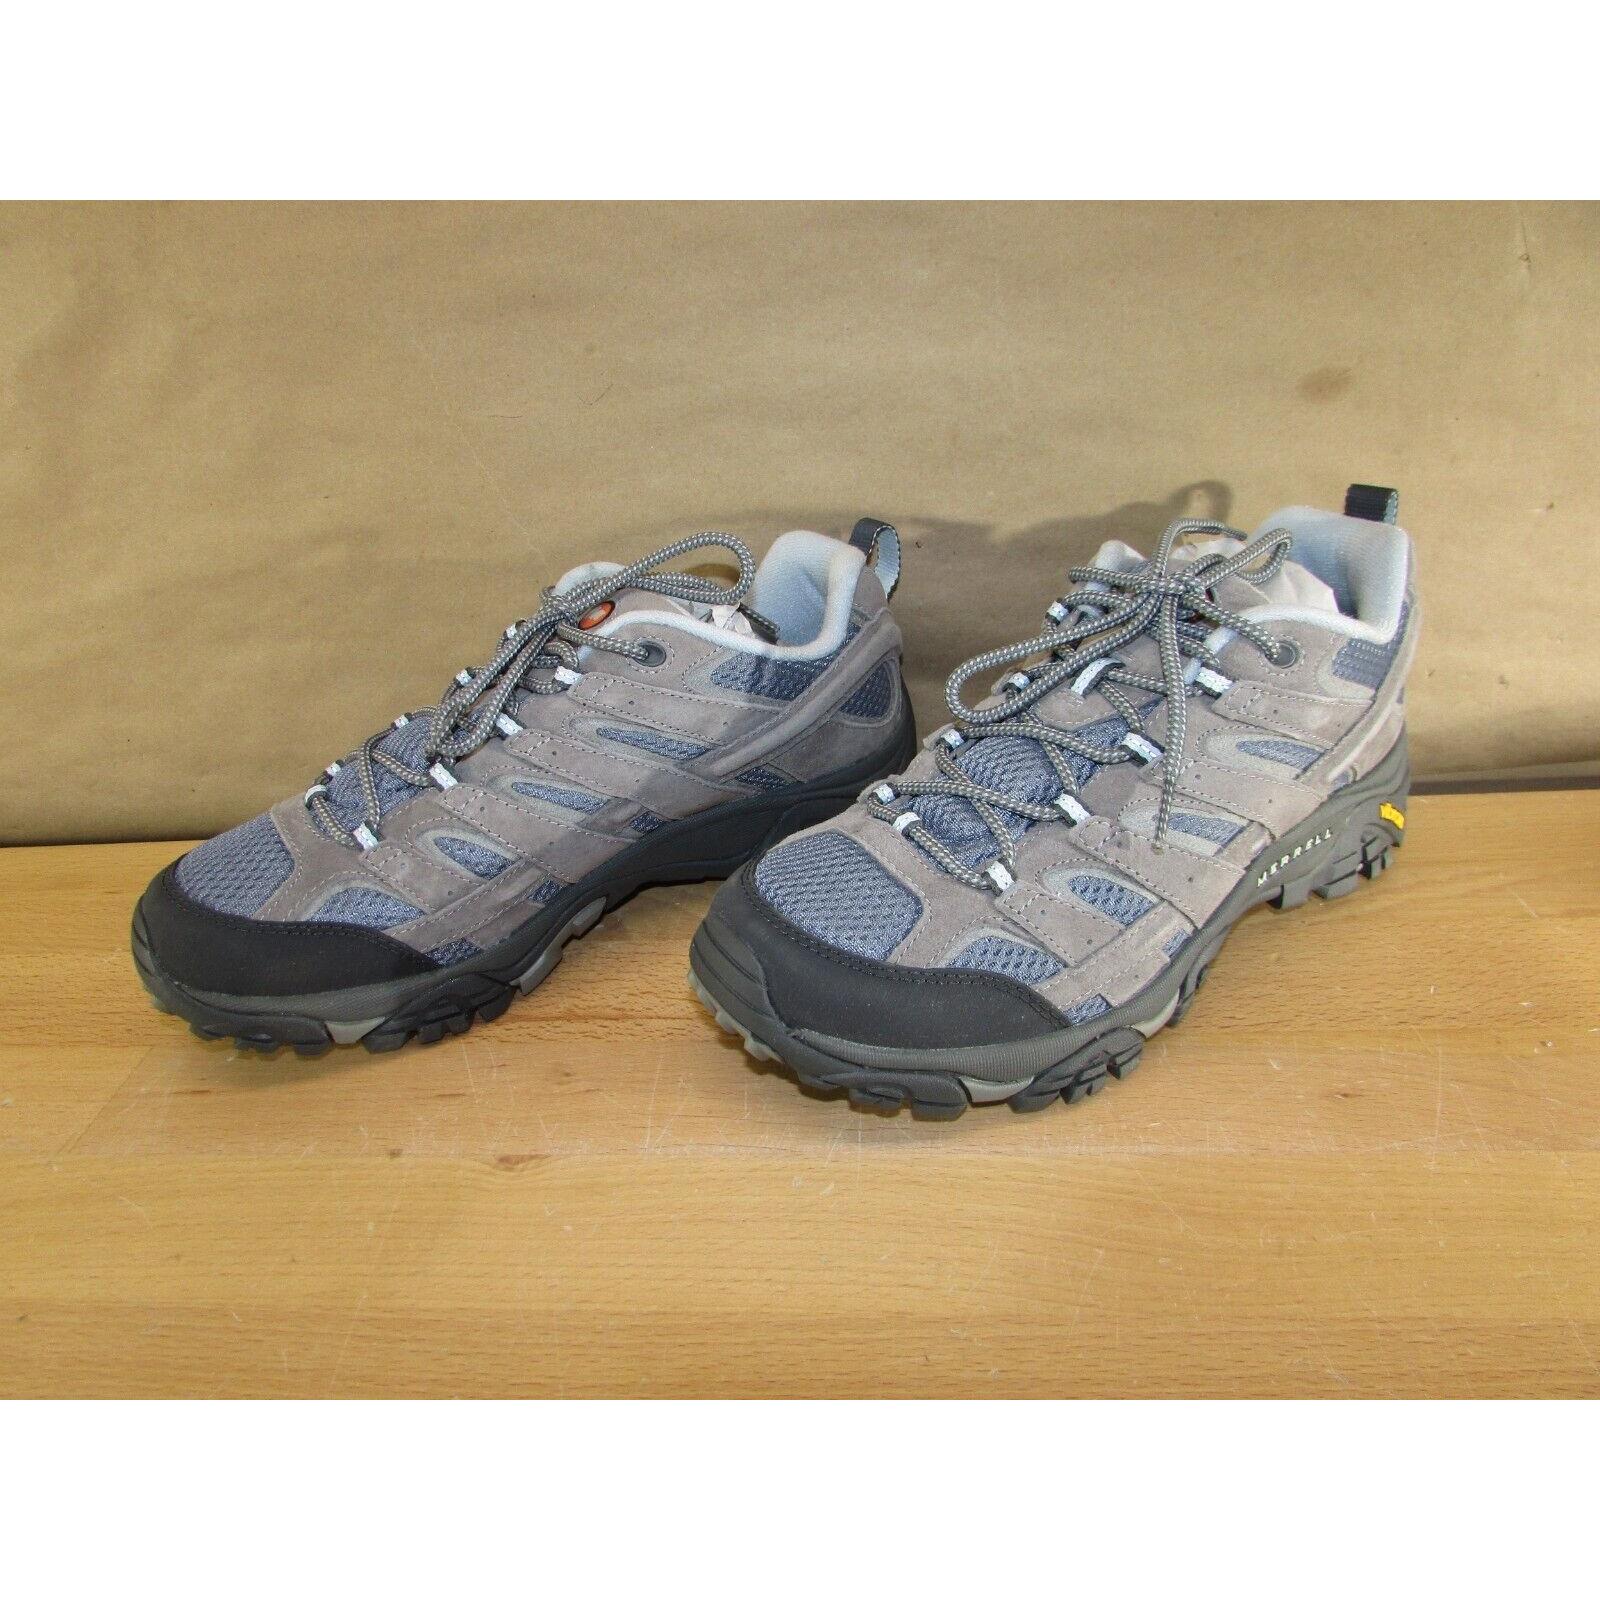 Merrell Moab 2 Ventilator Hiking Shoes - Women`s Size 10W Smoke